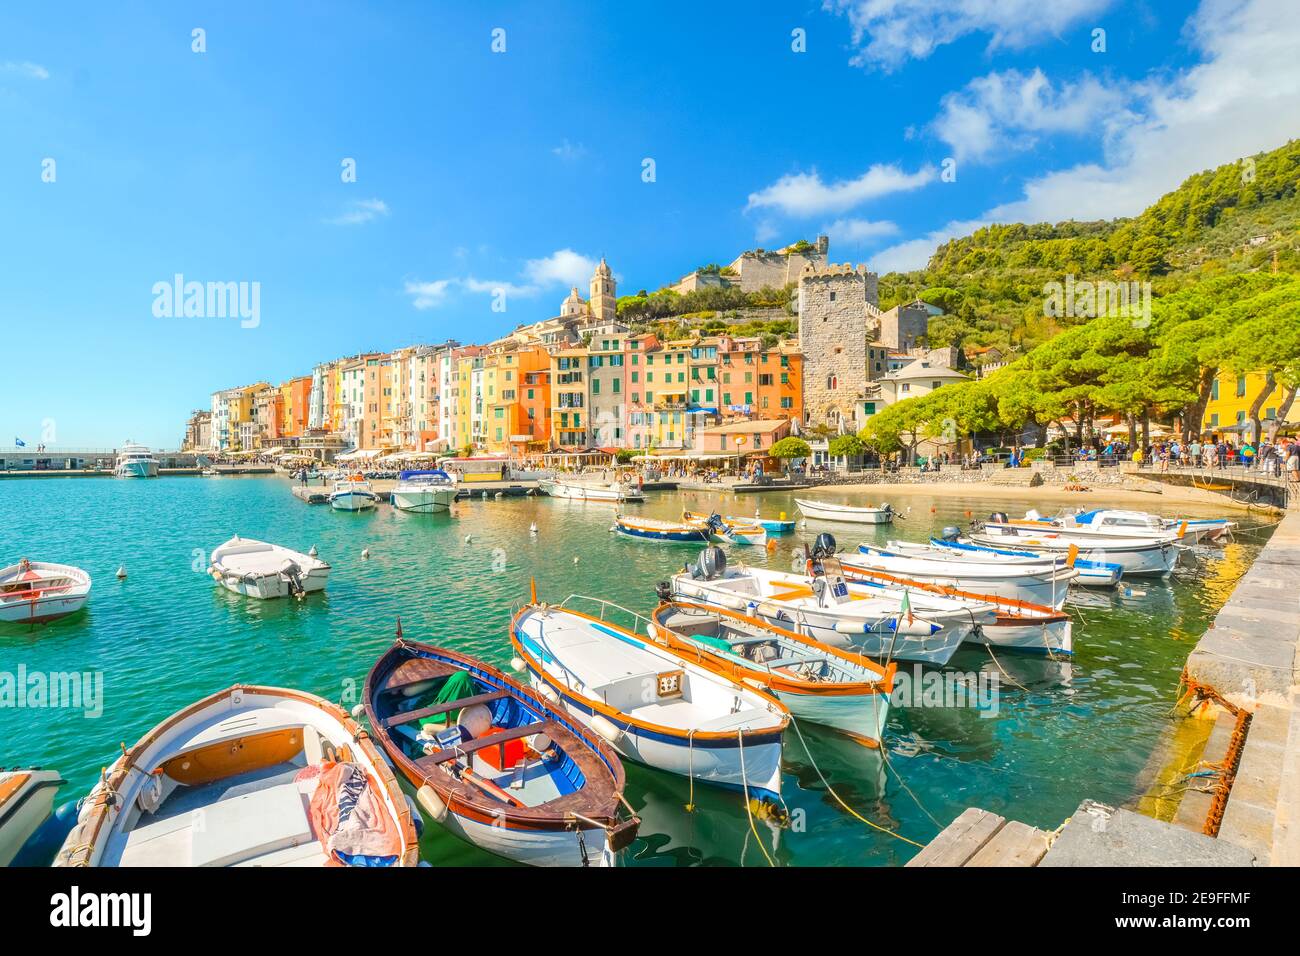 Boote säumen den Hafen der bunten, touristischen italienischen Stadt Portovenere, entlang der ligurischen Küste der italienischen Riviera. Stockfoto